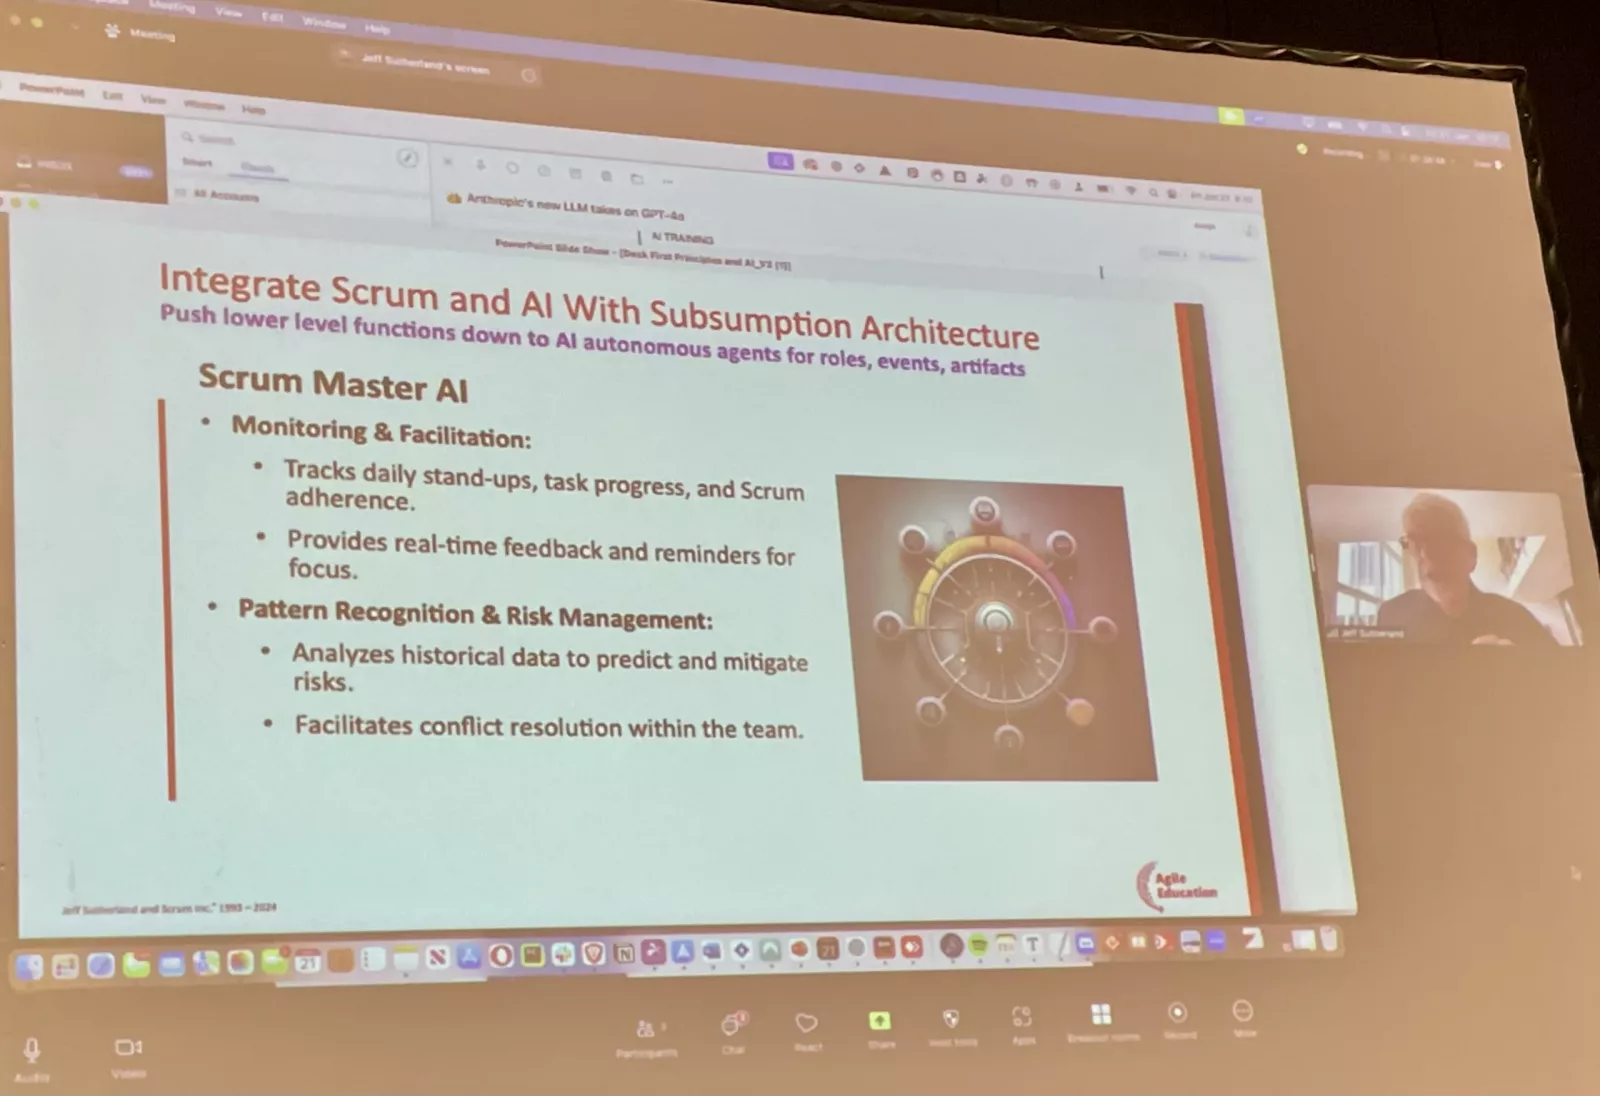 Die Rolle des ScrumMaster AI wird vorgestellt.